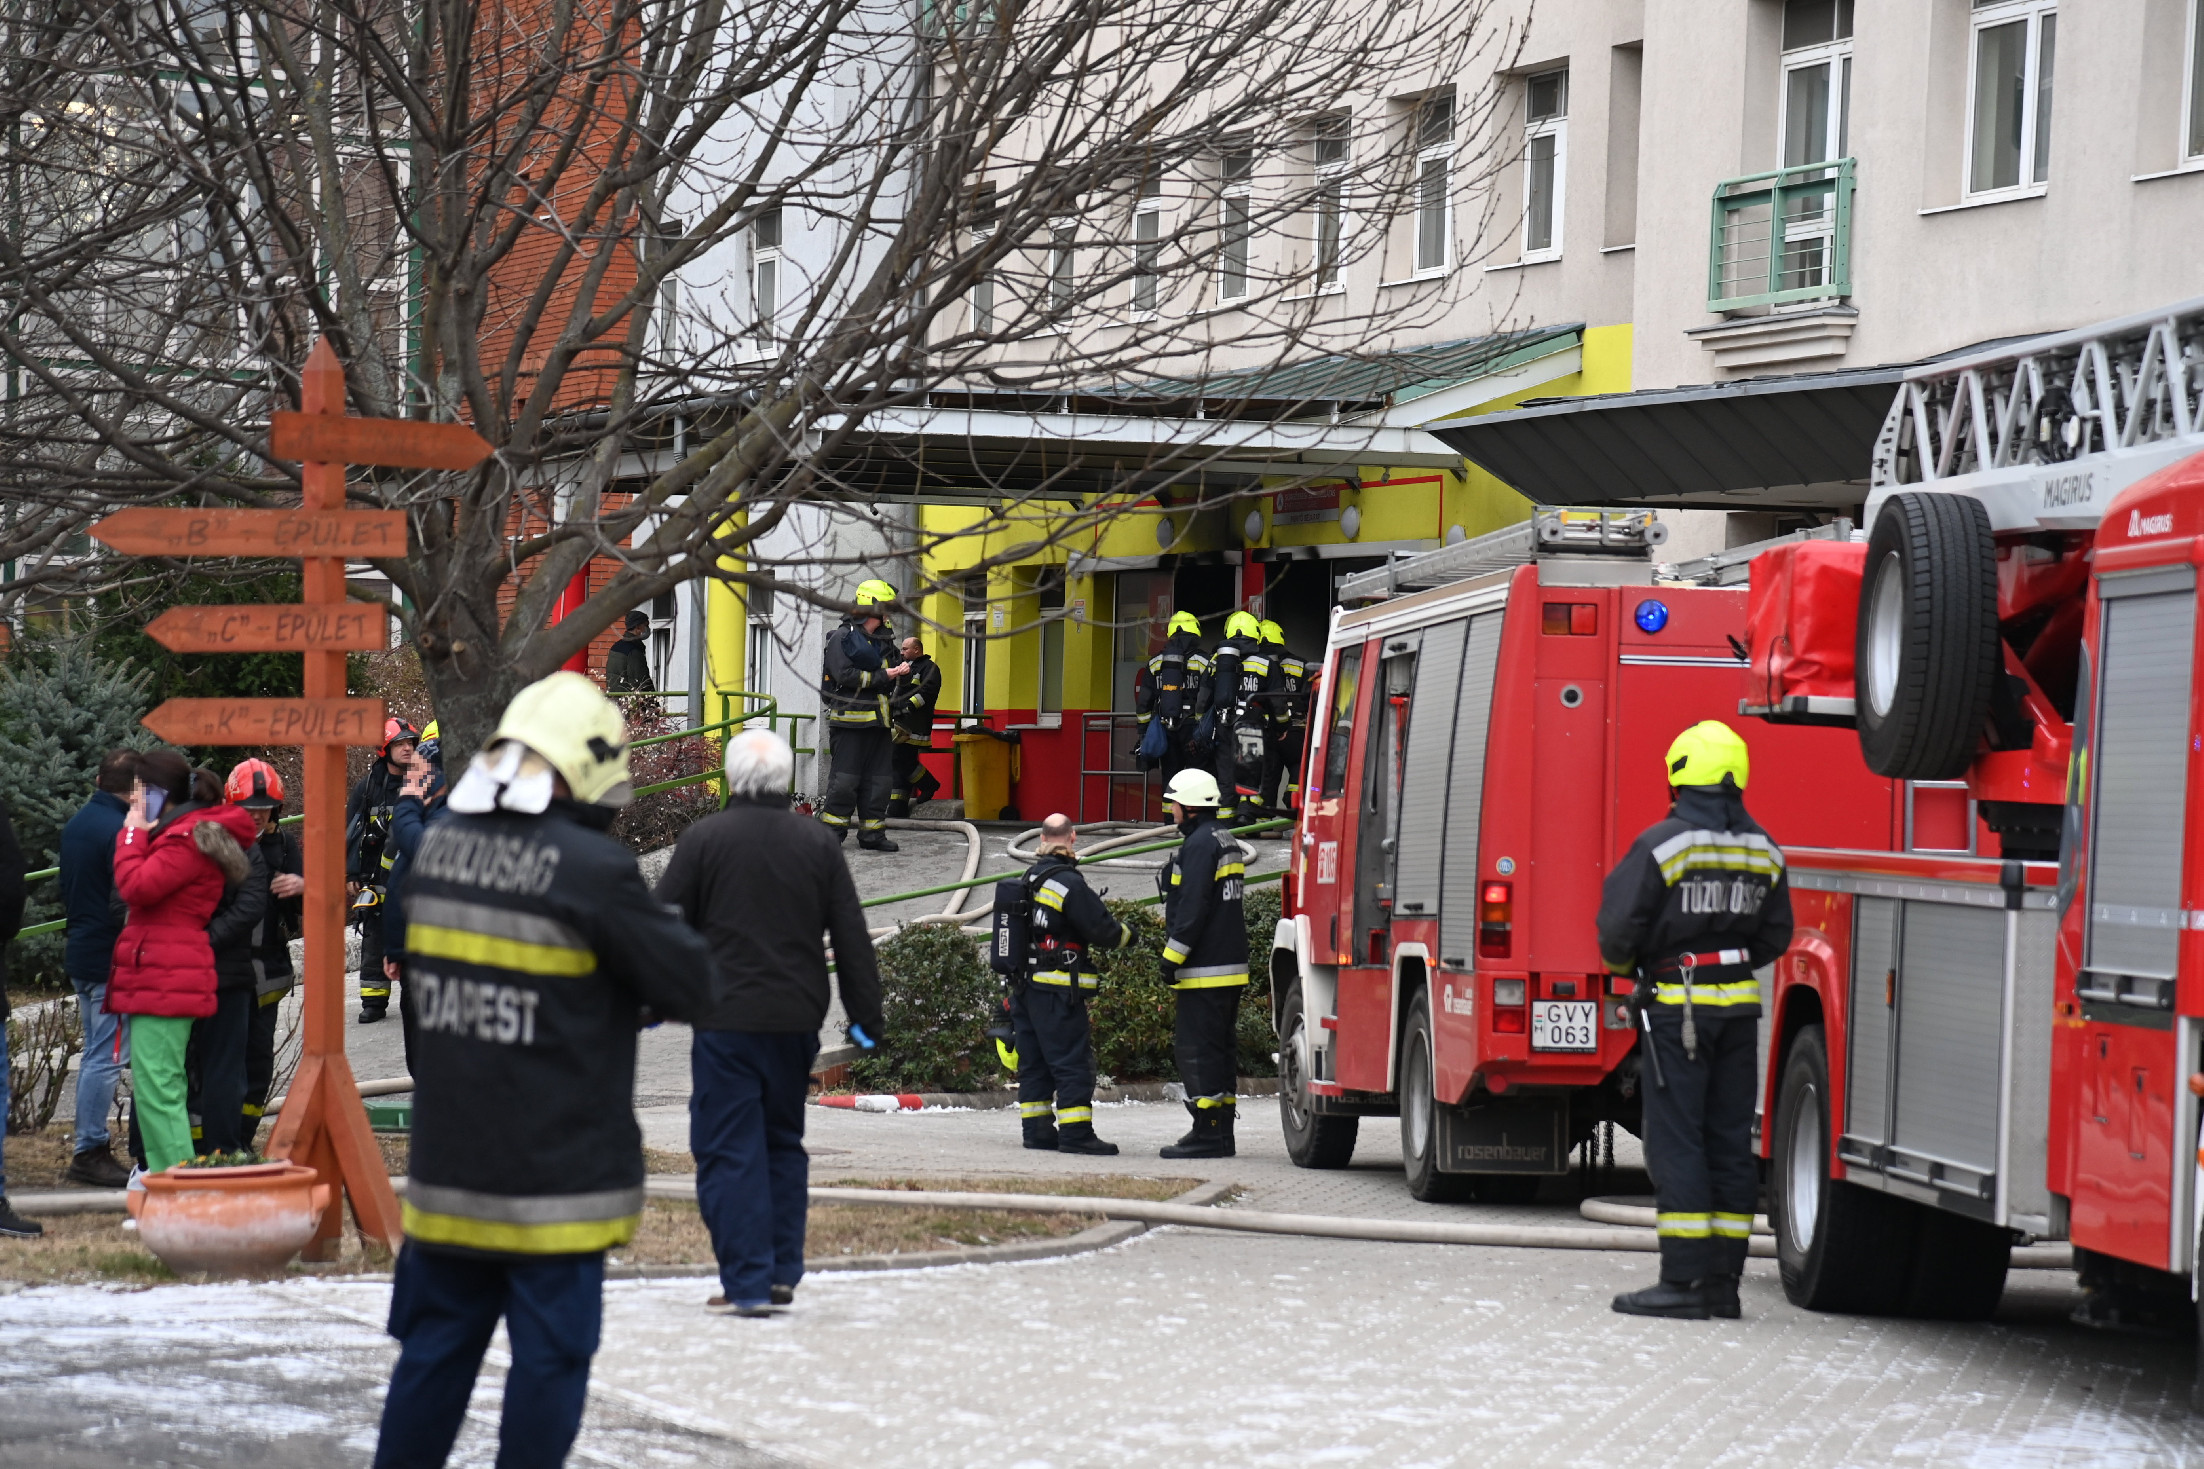 Rendkívüli: tűz pusztít a Szent Imre kórházban – frissítve